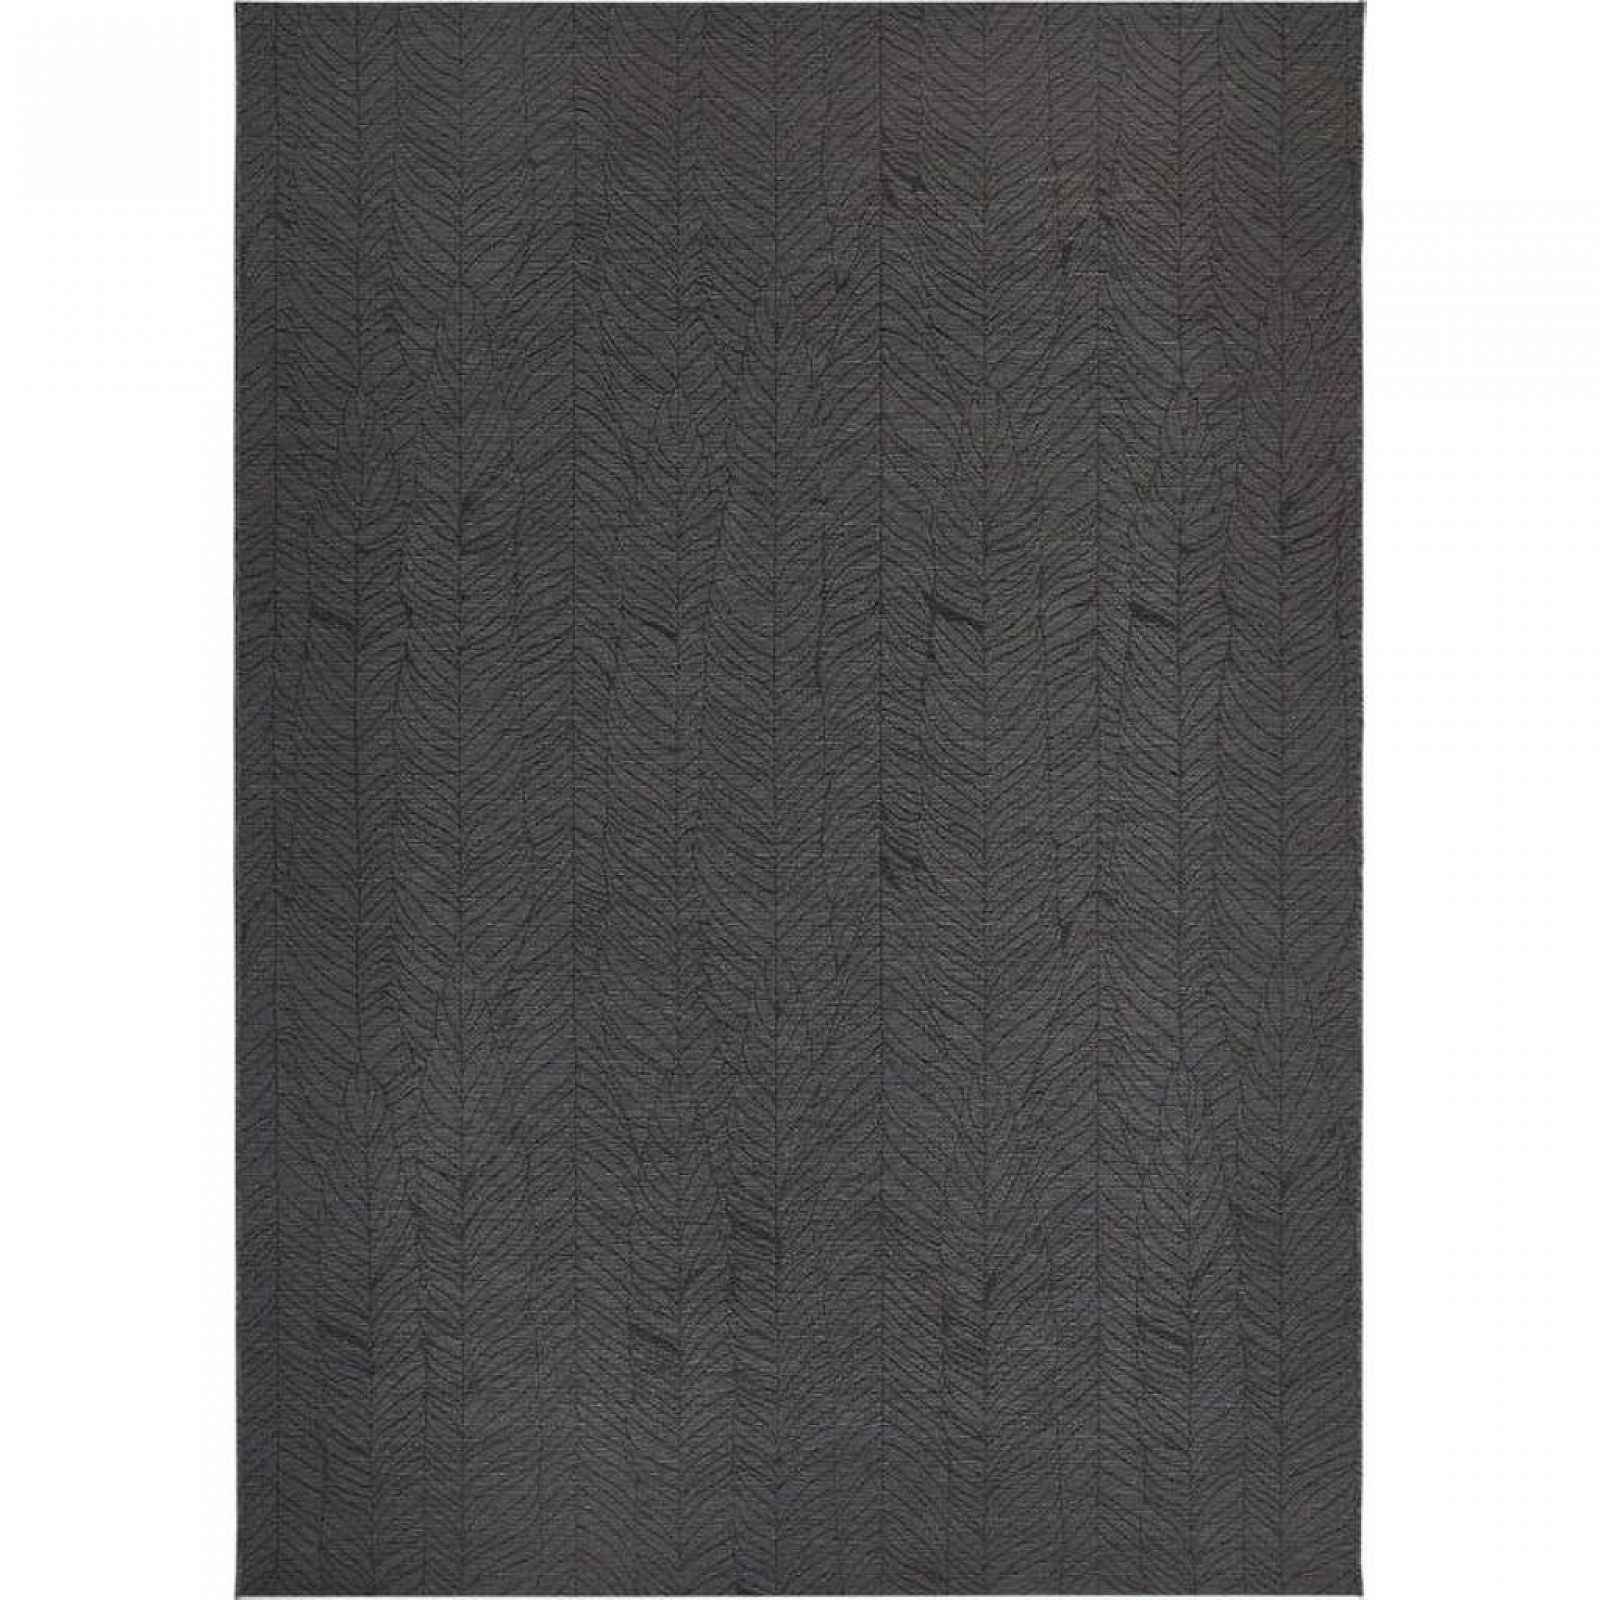 XXXLutz VENKOVNÍ KOBEREC, 160/230 cm, tmavě šedá Ambia Garden - Venkovní koberce - 008683011864